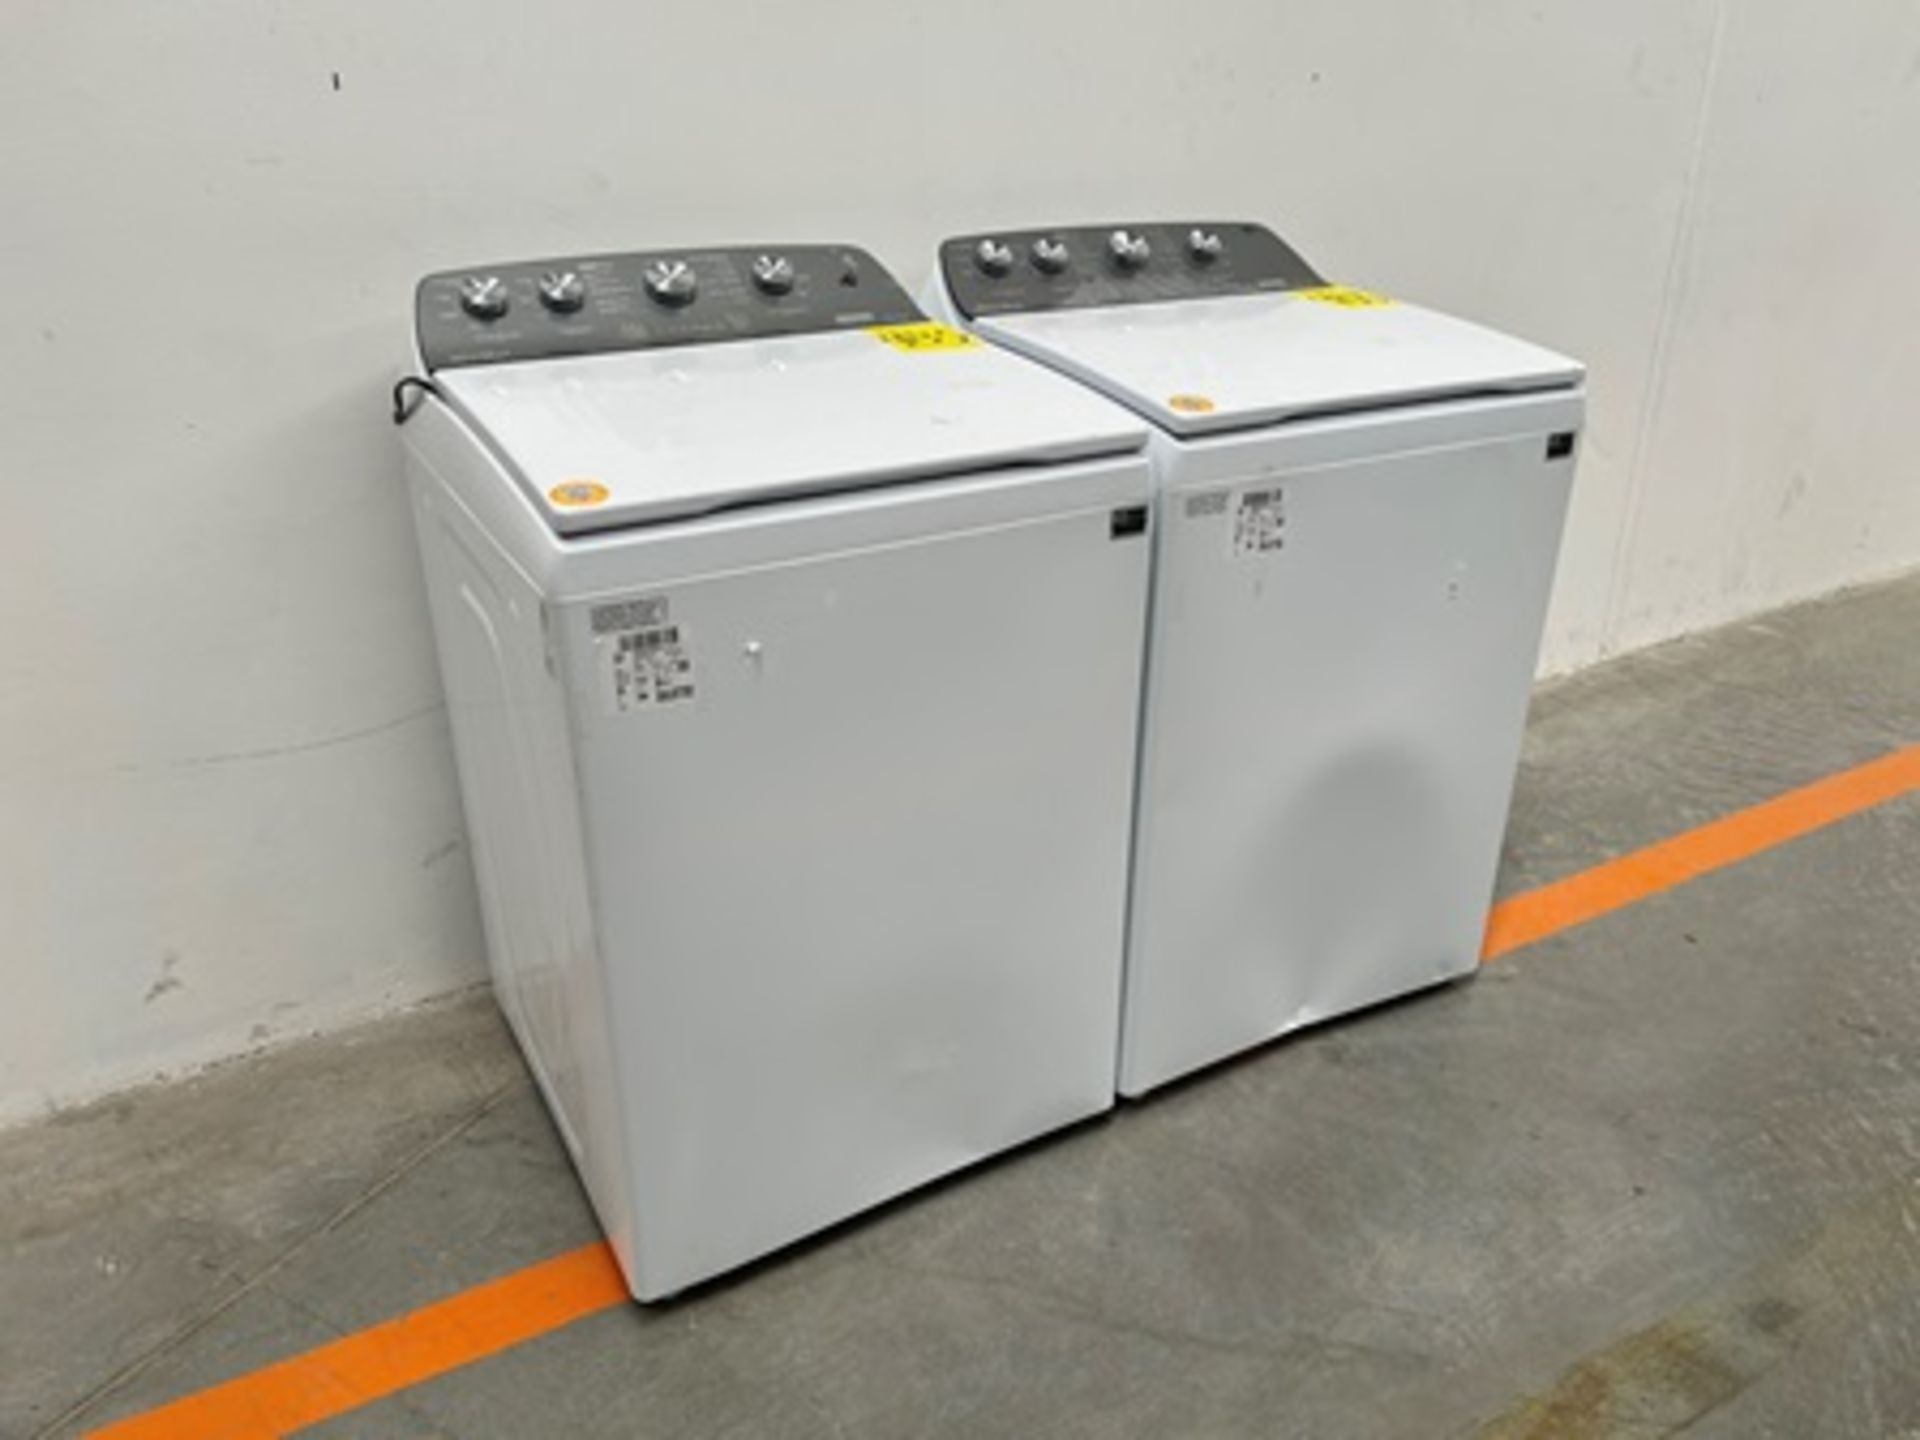 Lote de 2 lavadoras contiene: 1 Lavadora de 22 KG Marca WHIRPOOL, Modelo 8MWTW2224MPM0 - Image 2 of 10